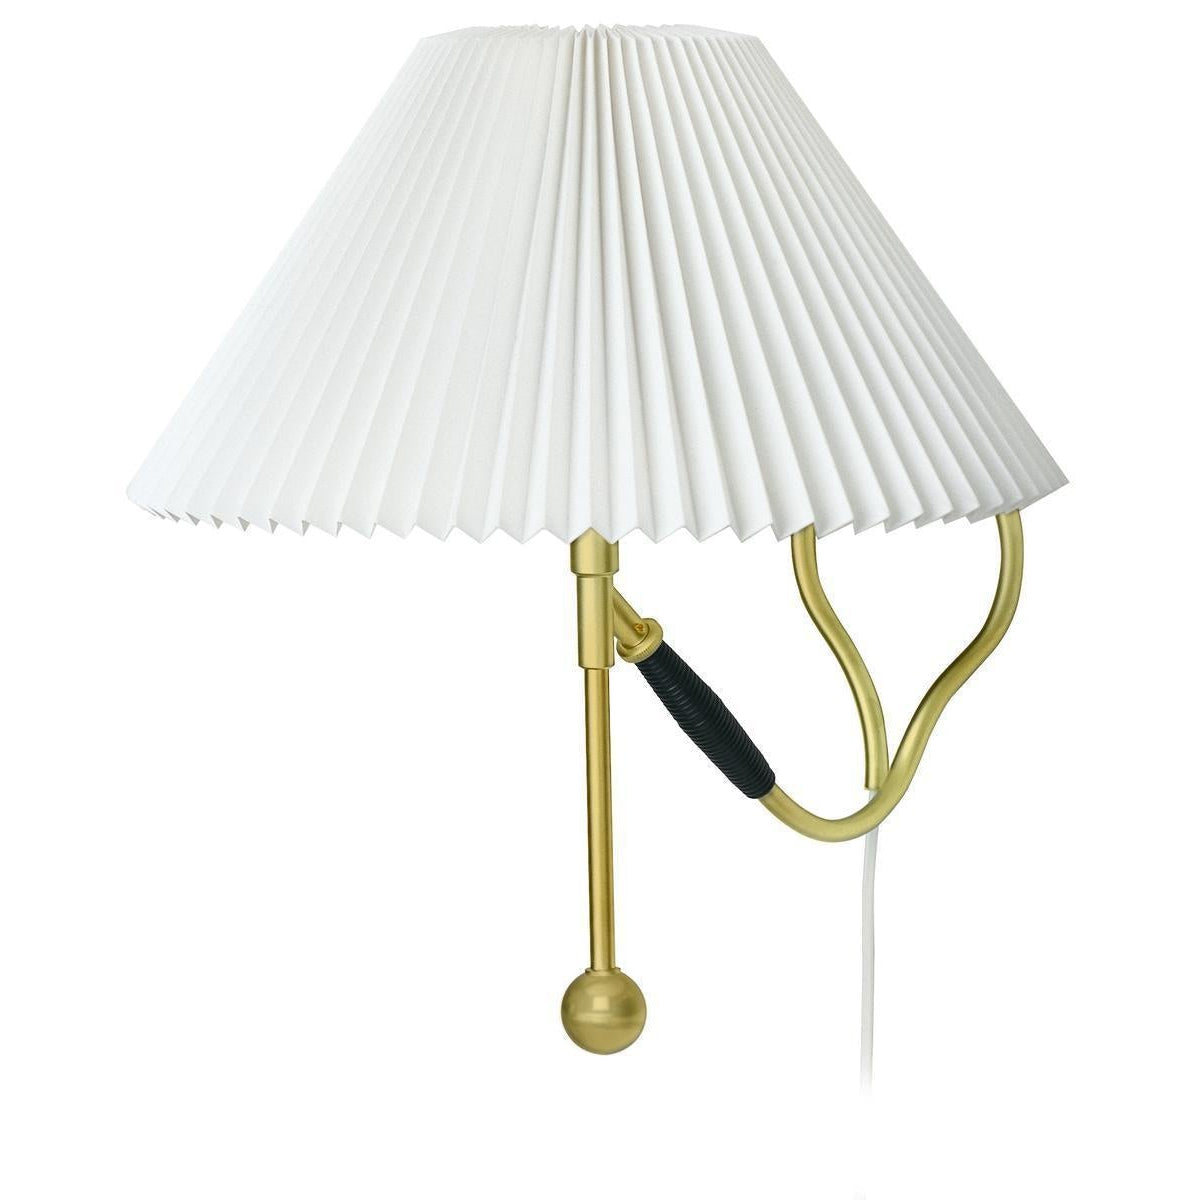 Le Klint Table / SAX MUR LAMPE 306 LASS, PLASTIQUE